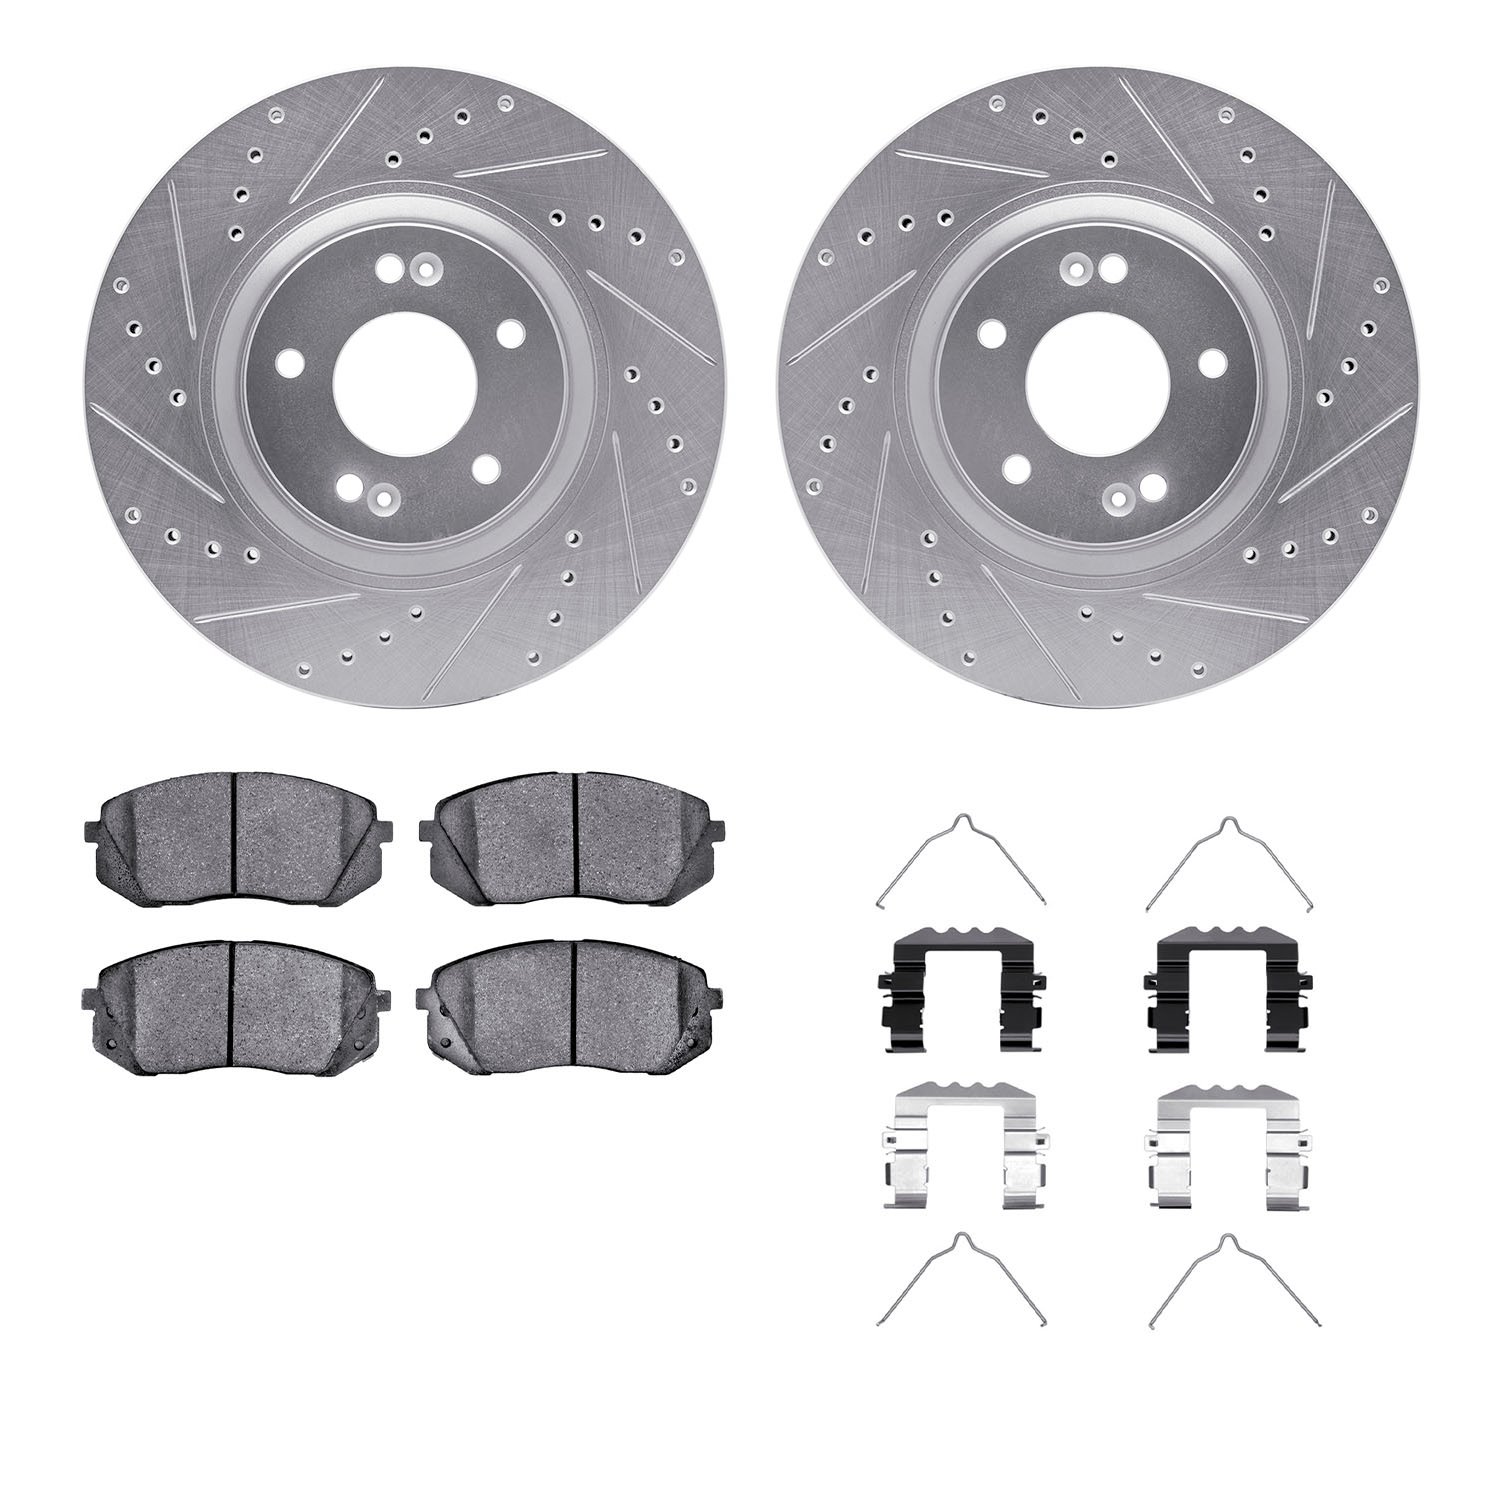 7312-03047 Drilled/Slotted Brake Rotor with 3000-Series Ceramic Brake Pads Kit & Hardware [Silver], 2015-2015 Kia/Hyundai/Genesi